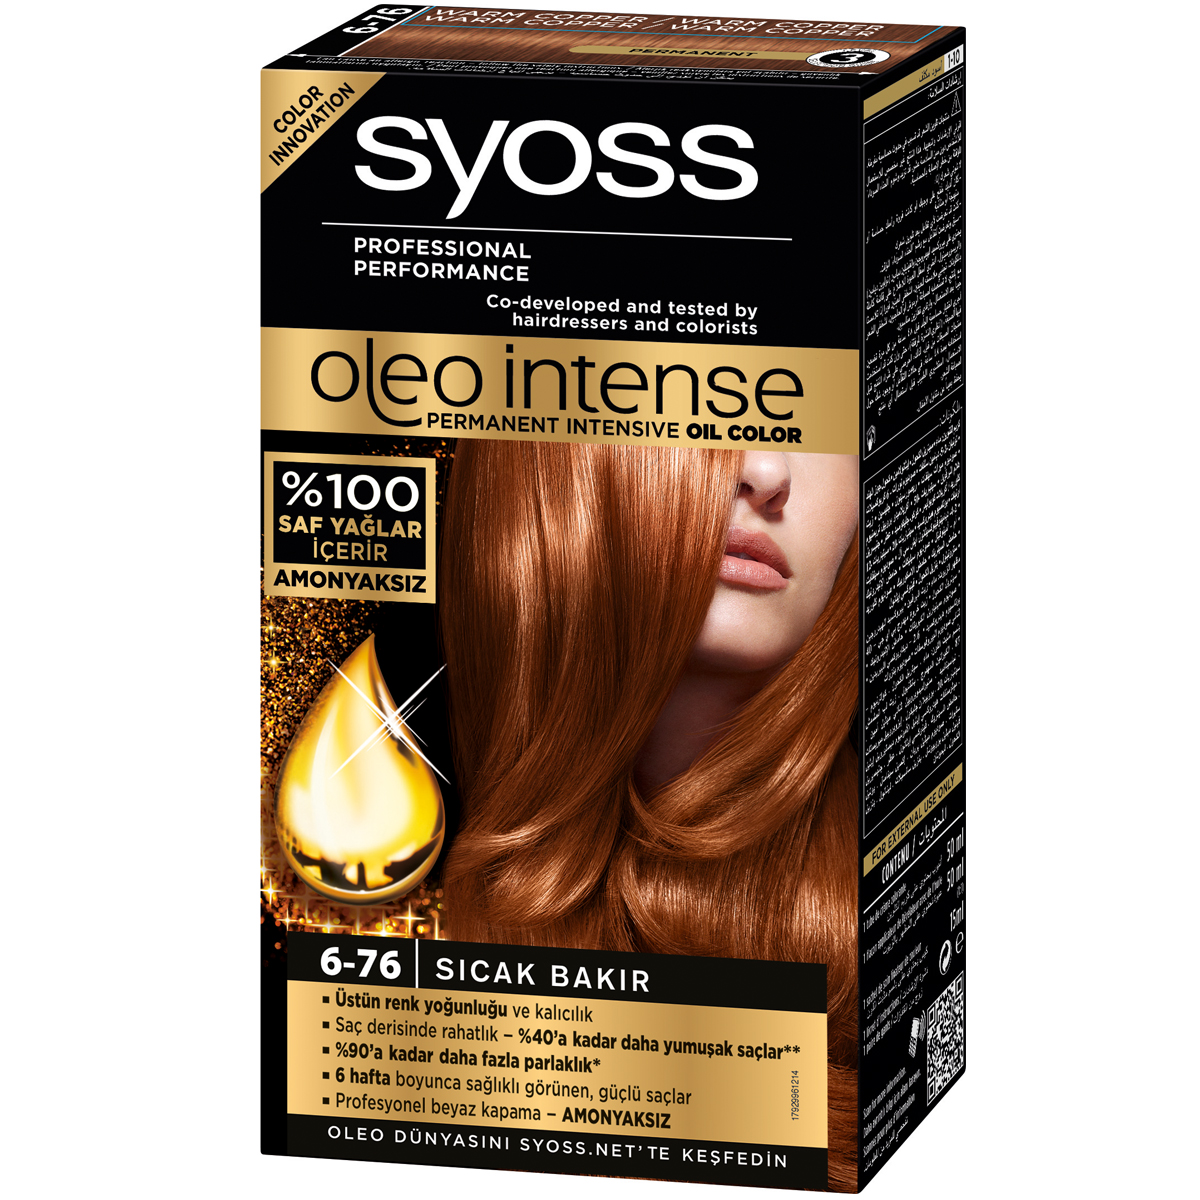 Syoss Oleo Intense Amonyaksız Saç Boyası 6-76 Sıcak Bakır